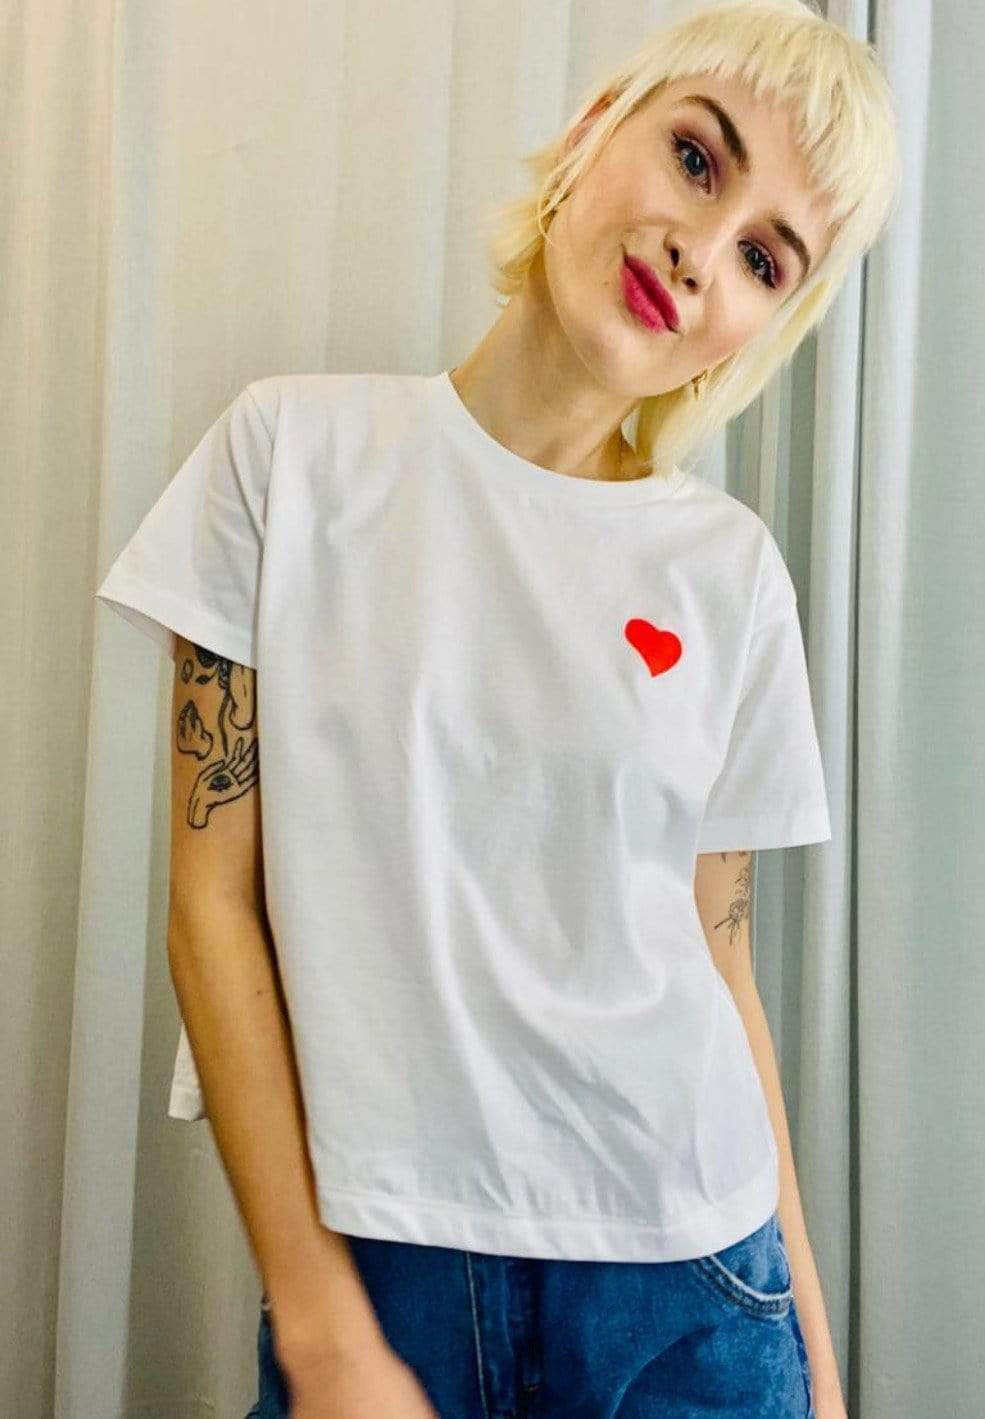 iki M. Tops & T-Shirts Cropped Heart Faire Mode Women muenchen